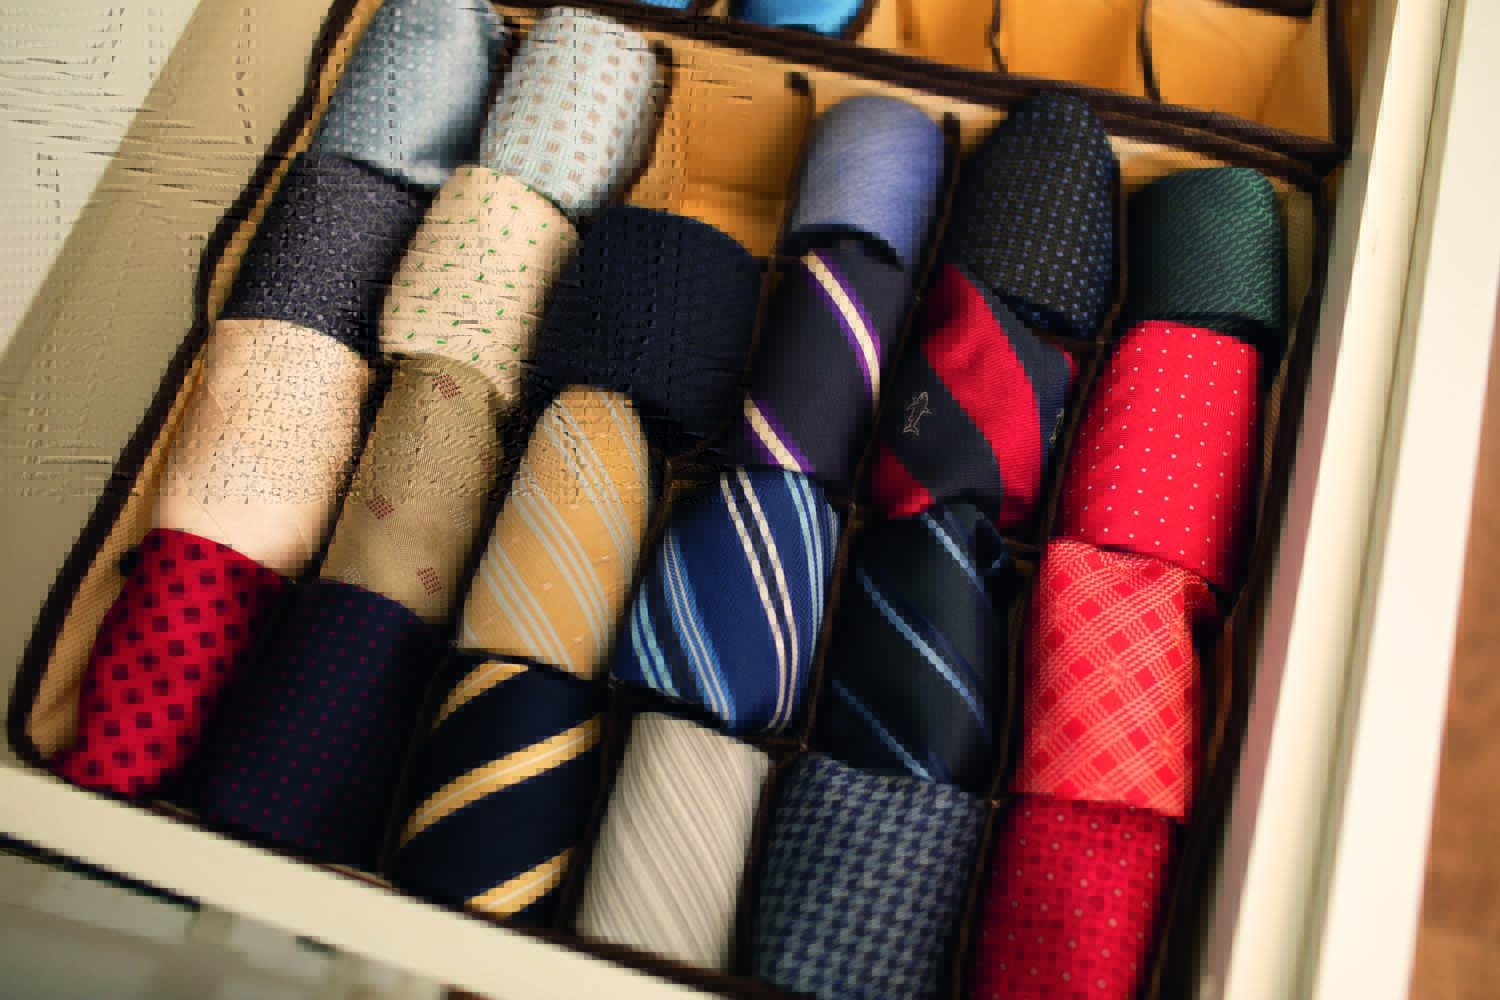 Caixa com gravatas de várias cores e estampas listradas